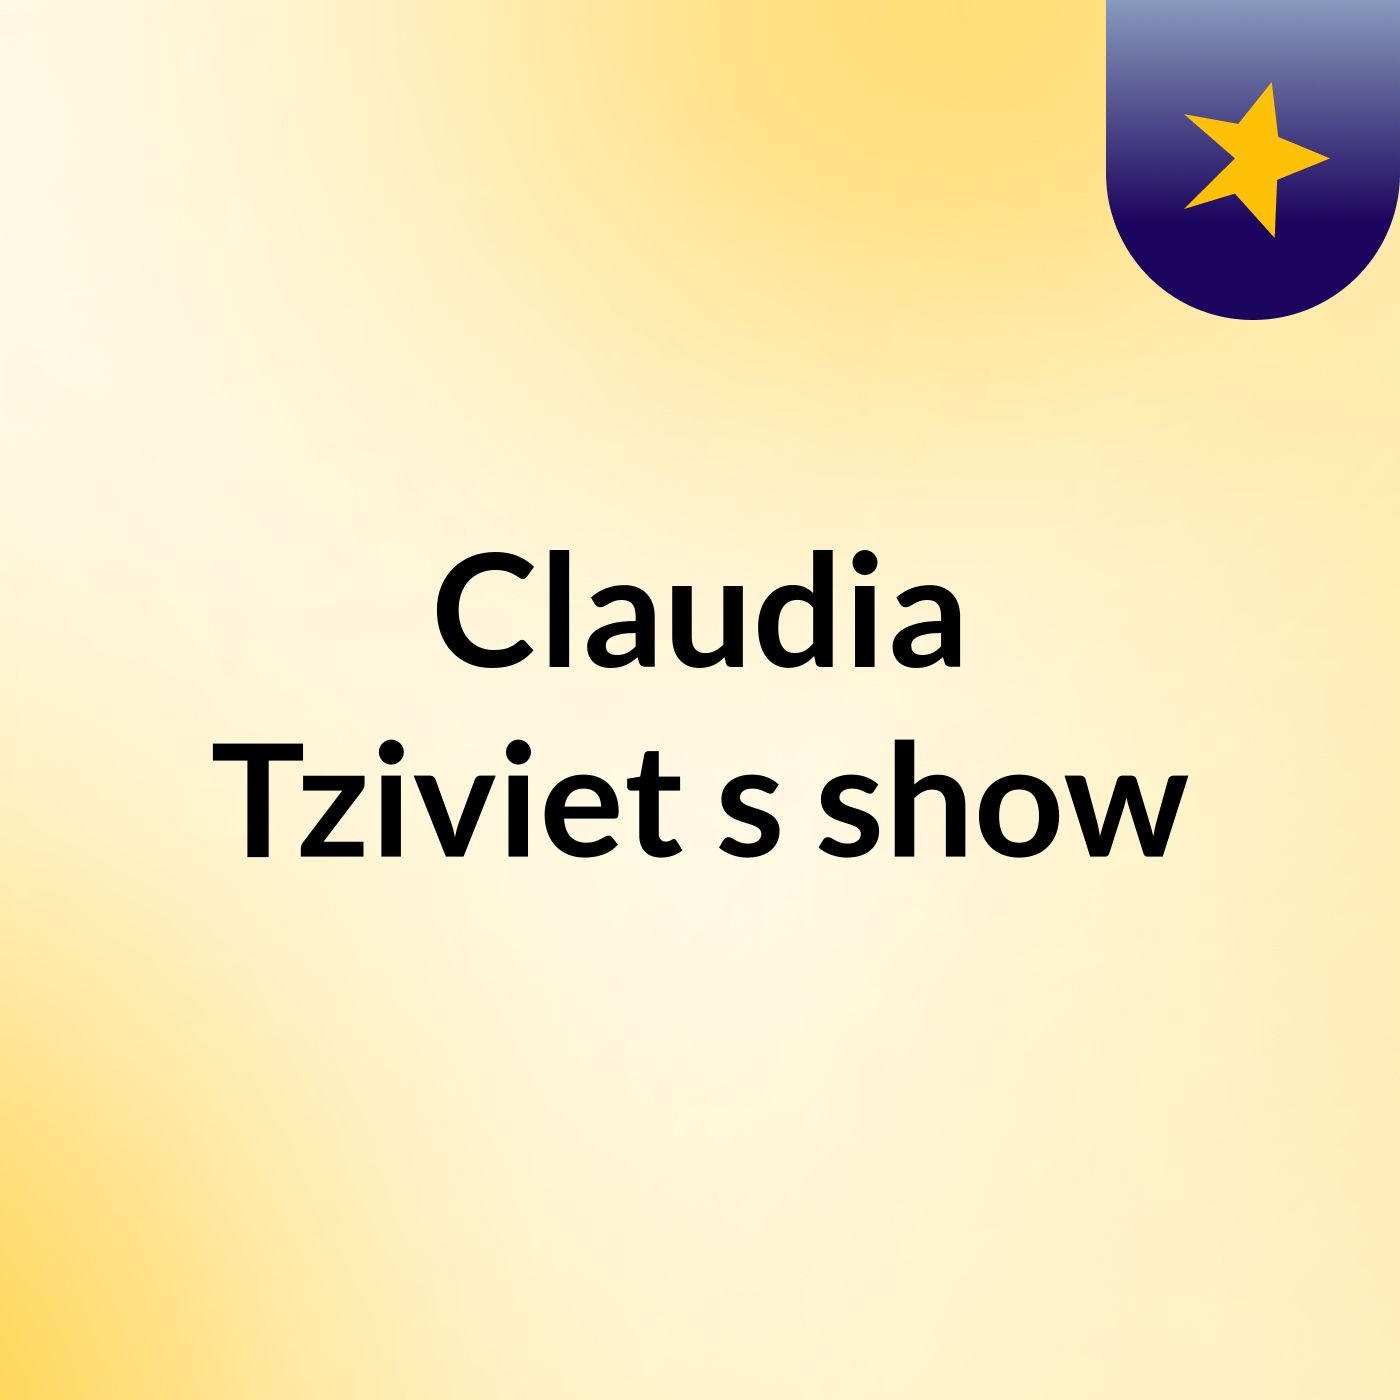 Claudia Tziviet's show